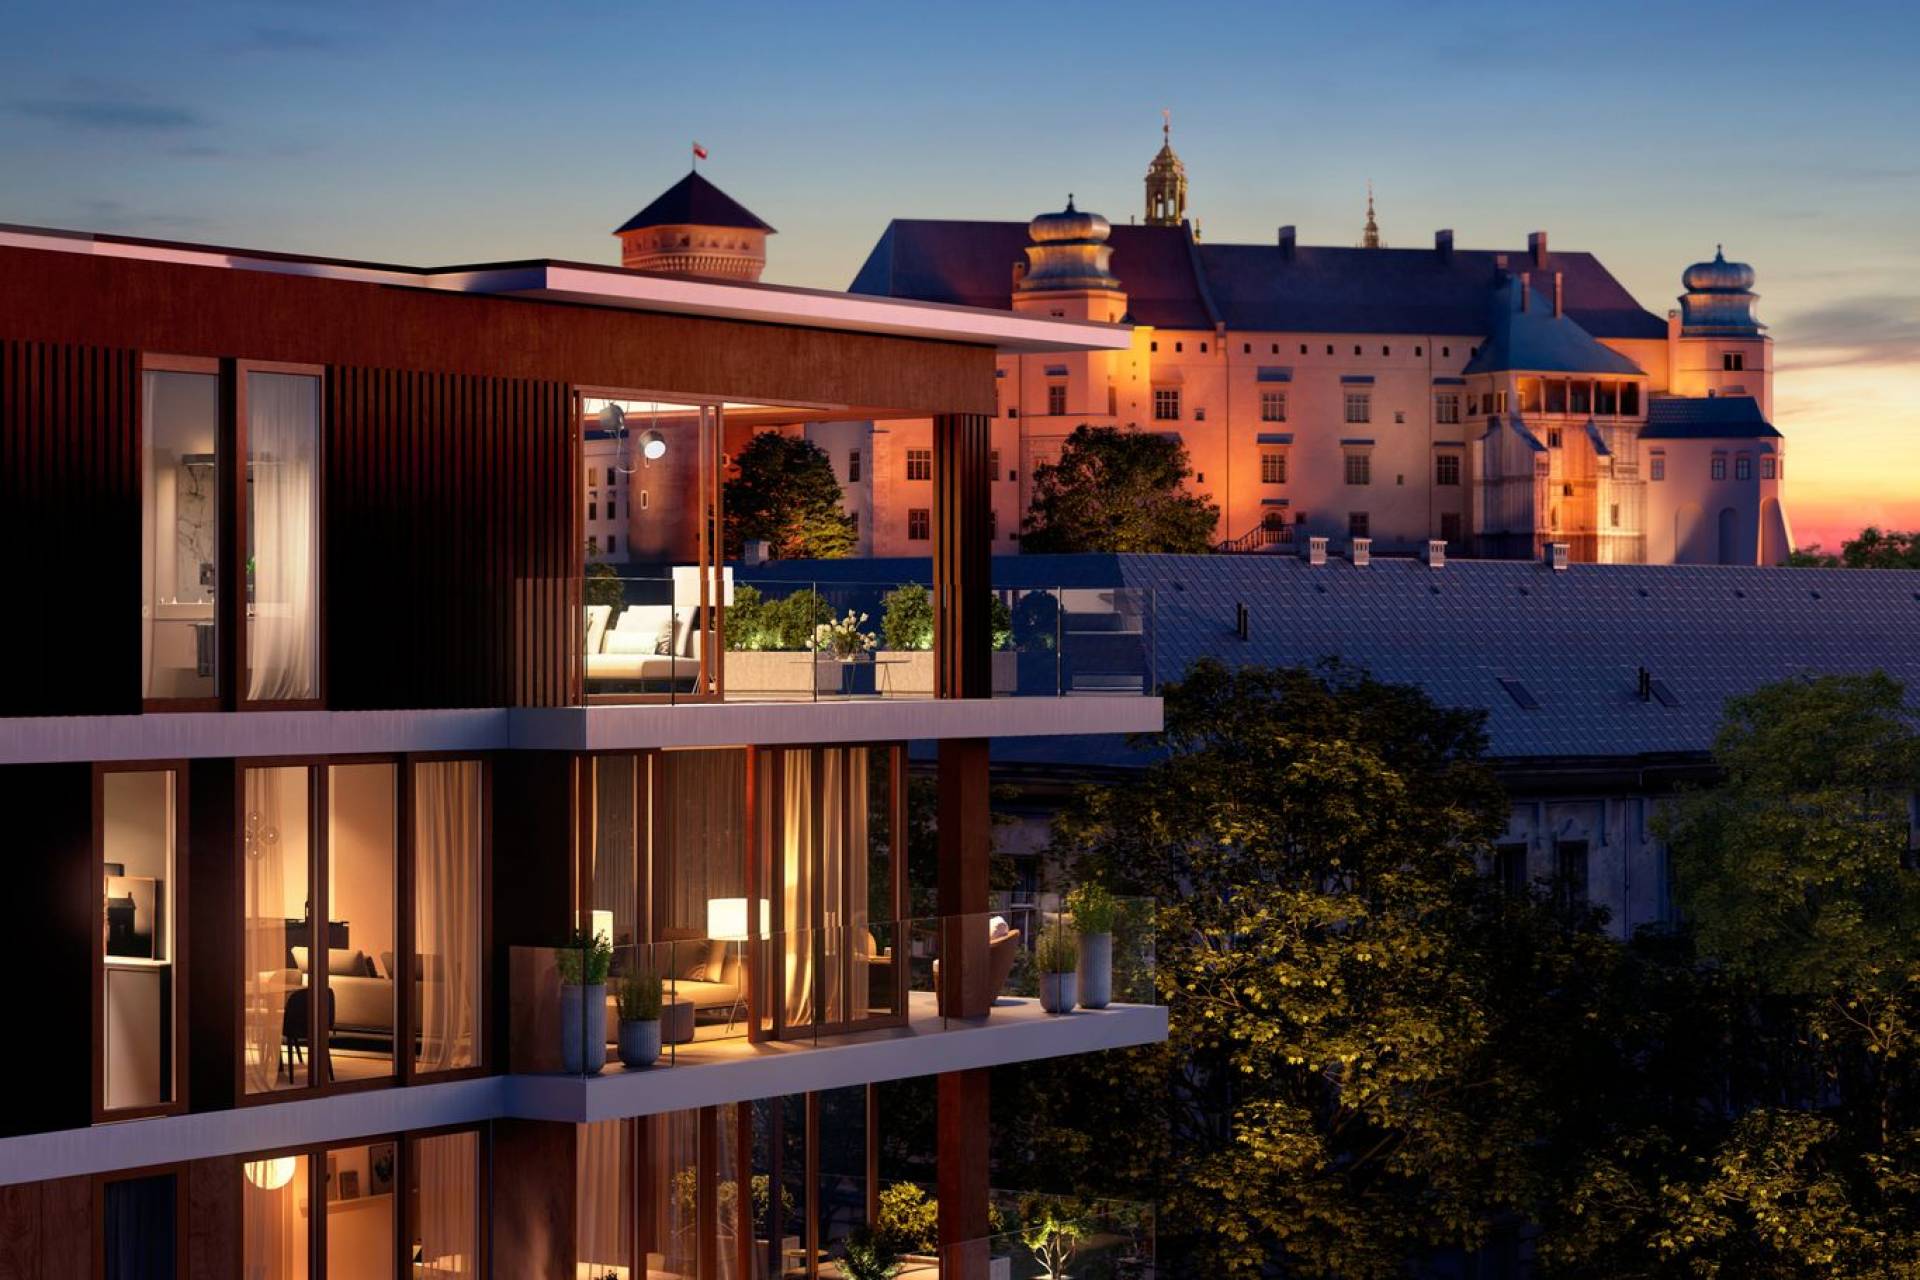 Budowa najdroższego hotelu w Krakowie wstrzymana, zniszczyli zabytek?